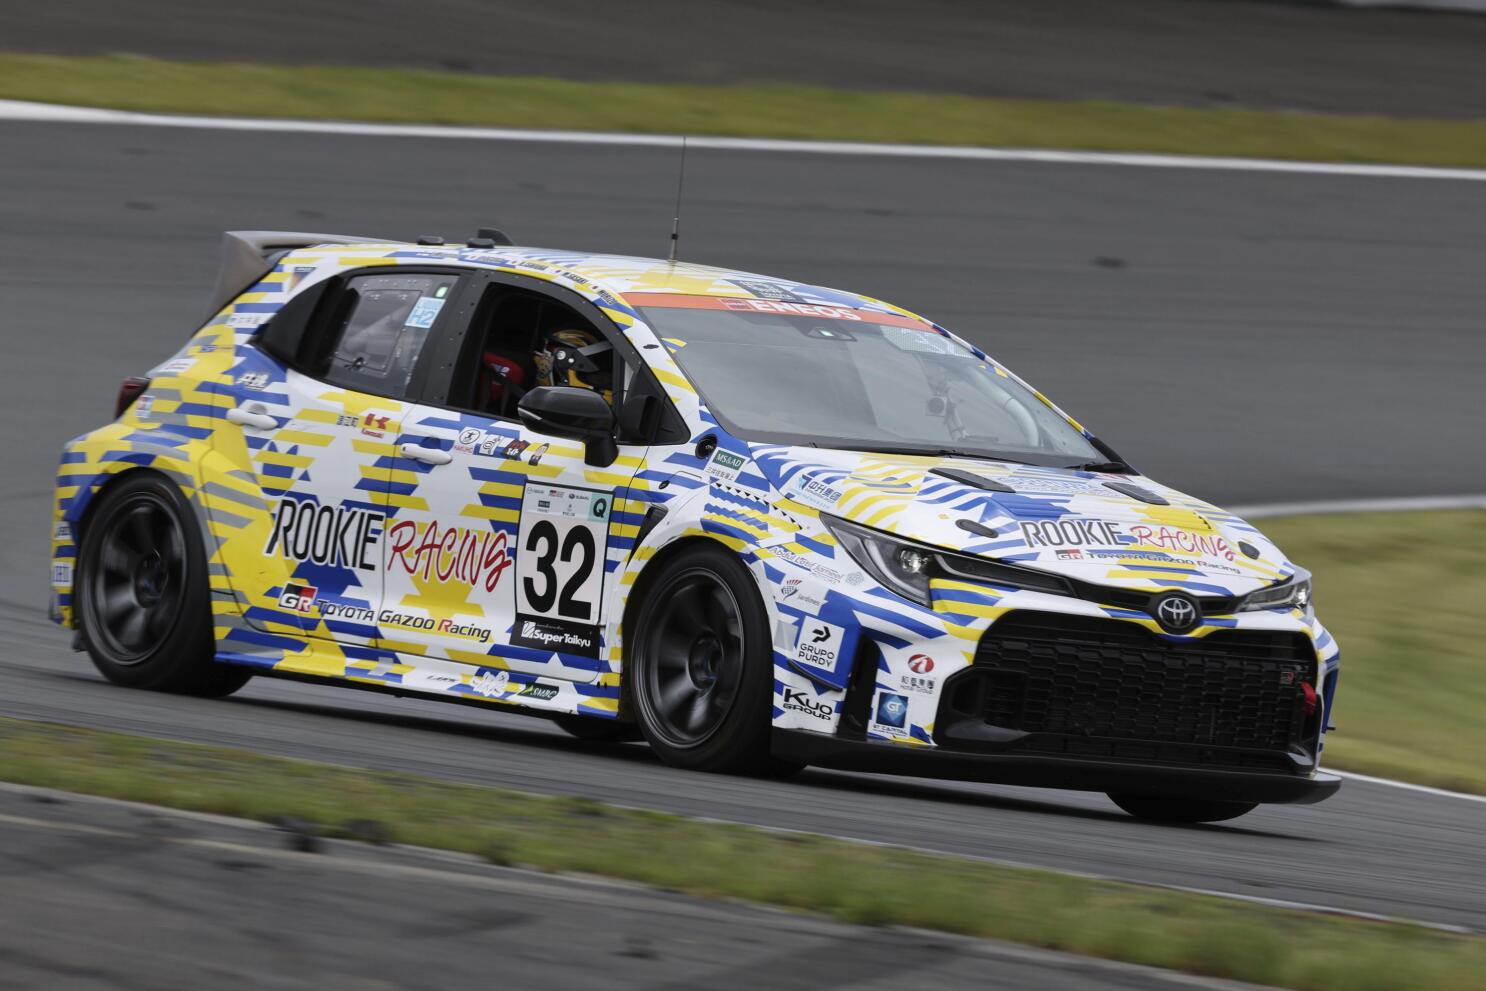 2023 Toyota GR Corolla Drift-Racing Car